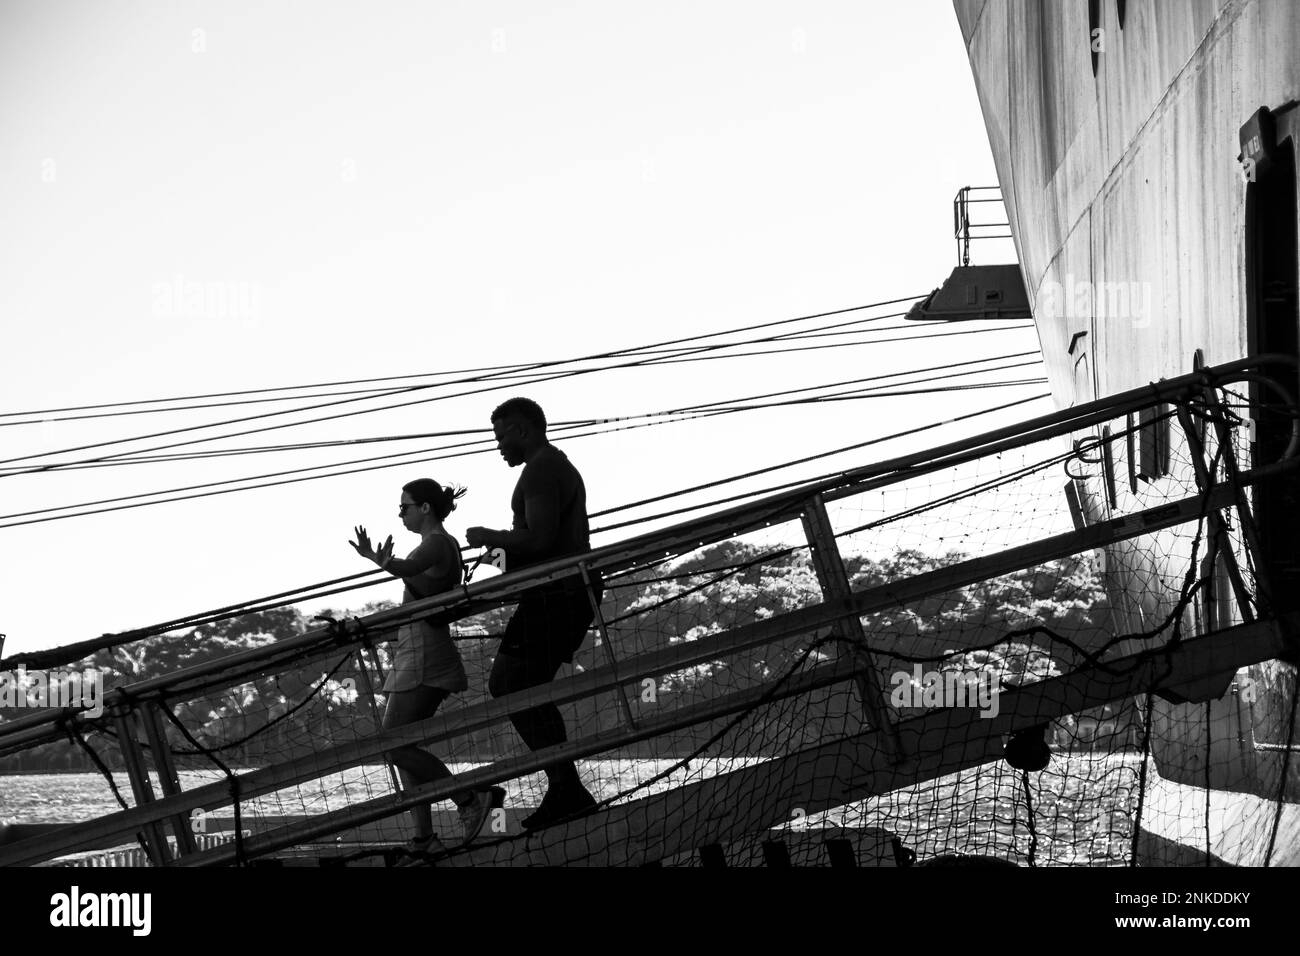 Una imagen en blanco y negro de alto contraste de dos personas caminando por la pasarela de un crucero, Roatán, Honduras. Foto de stock